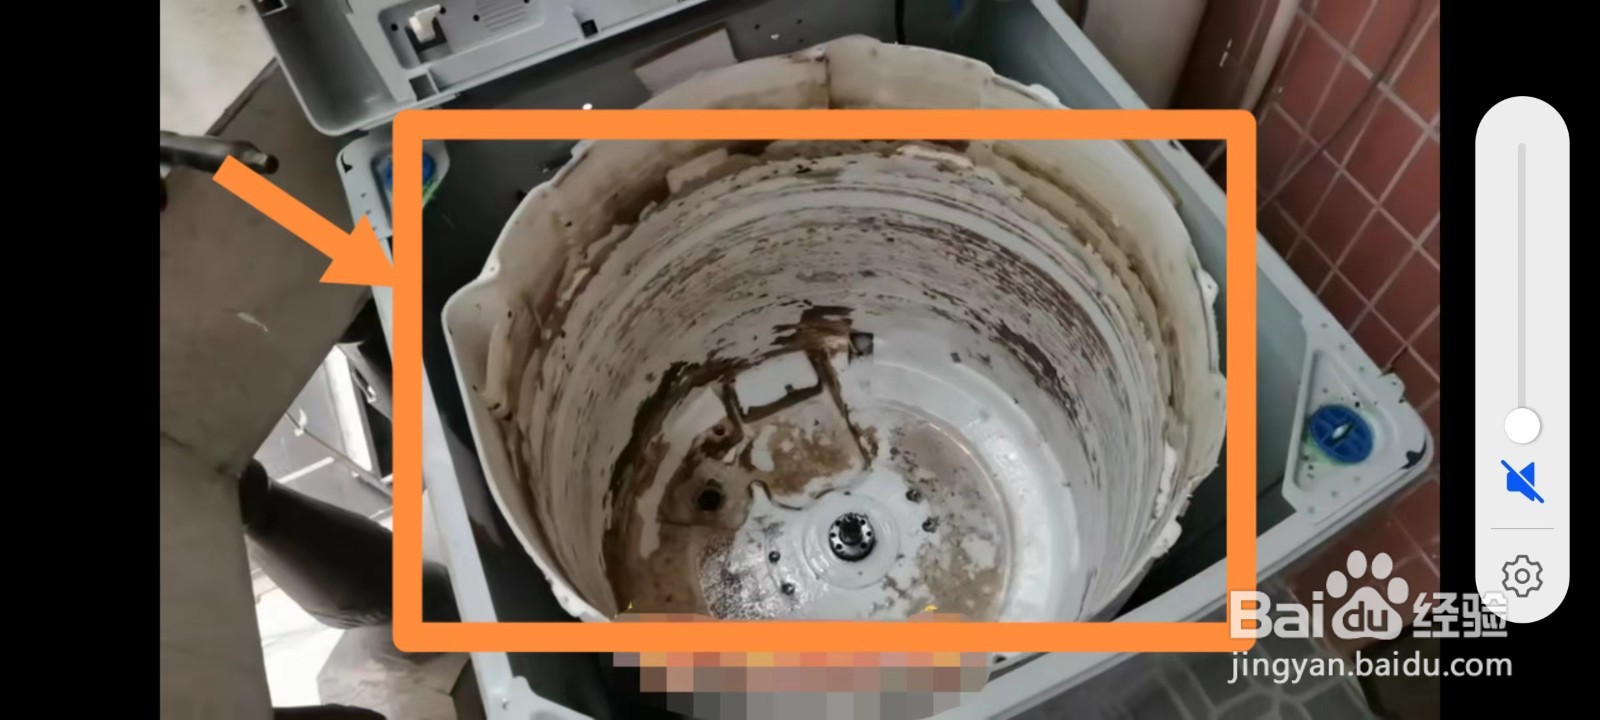 立式洗衣机怎么拆卸清理